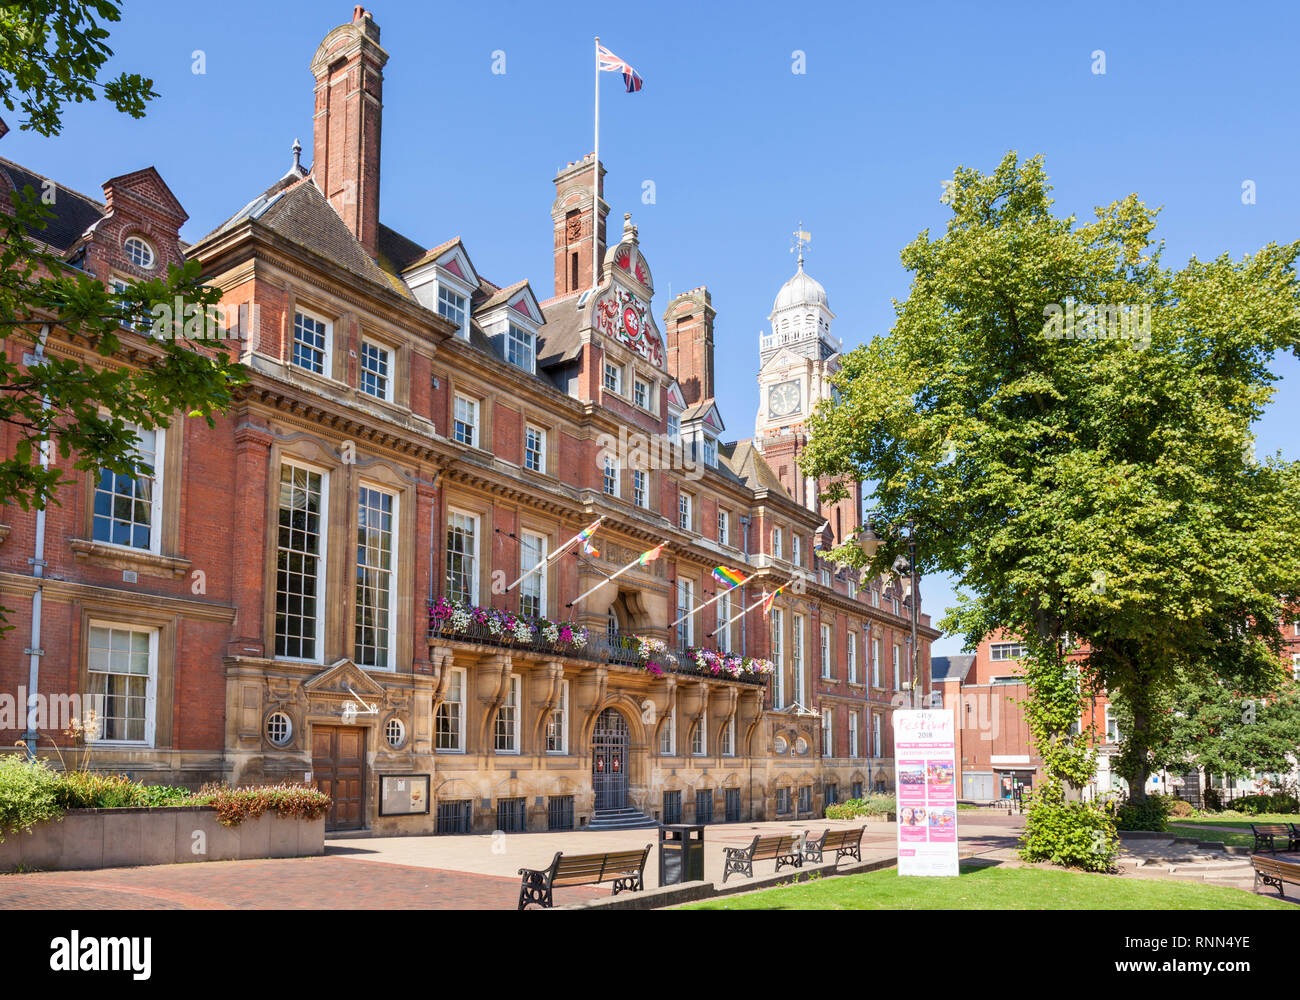 Hôtel de ville de Leicester, Place de l'Hôtel de Ville, Centre-ville de Leicester, Leicestershire, Angleterre East Midlands,uk,GB,Europe Banque D'Images